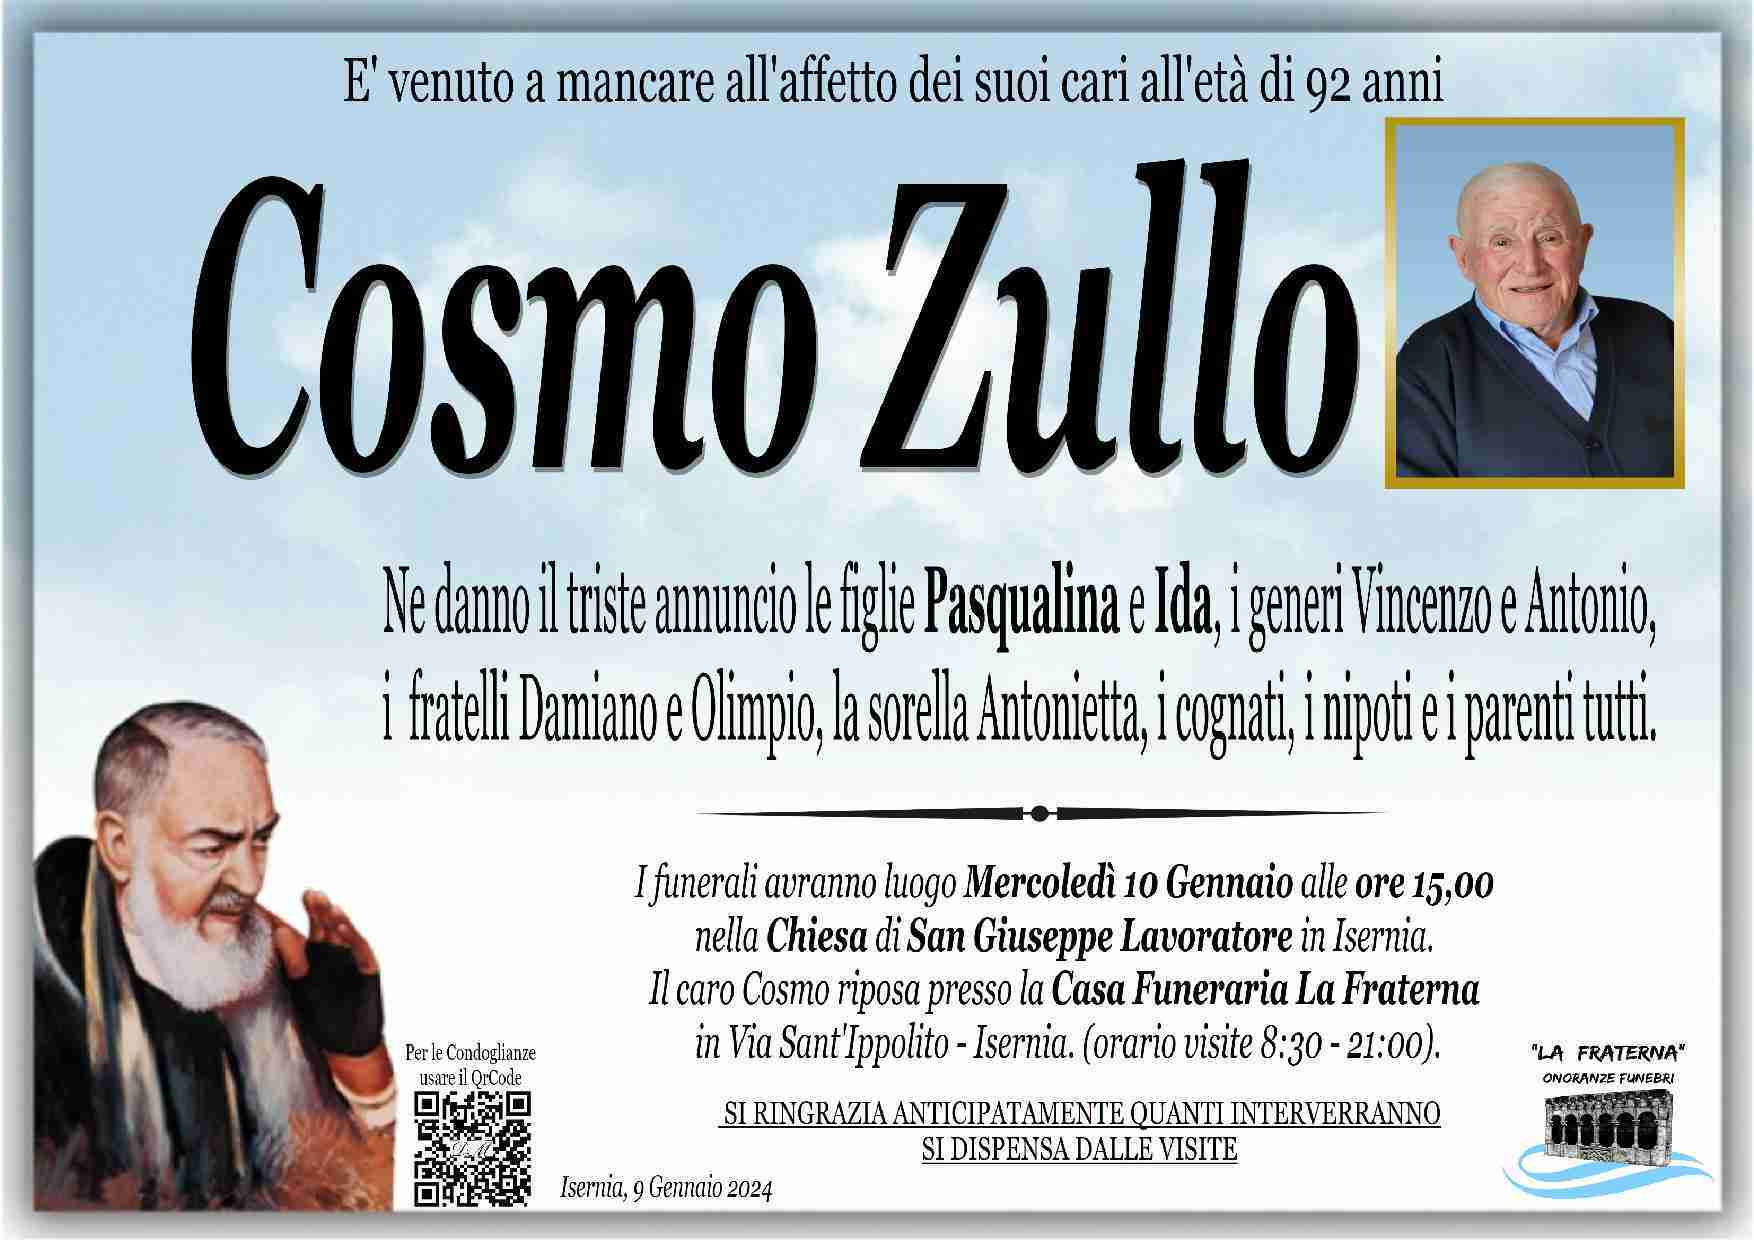 Cosmo Zullo